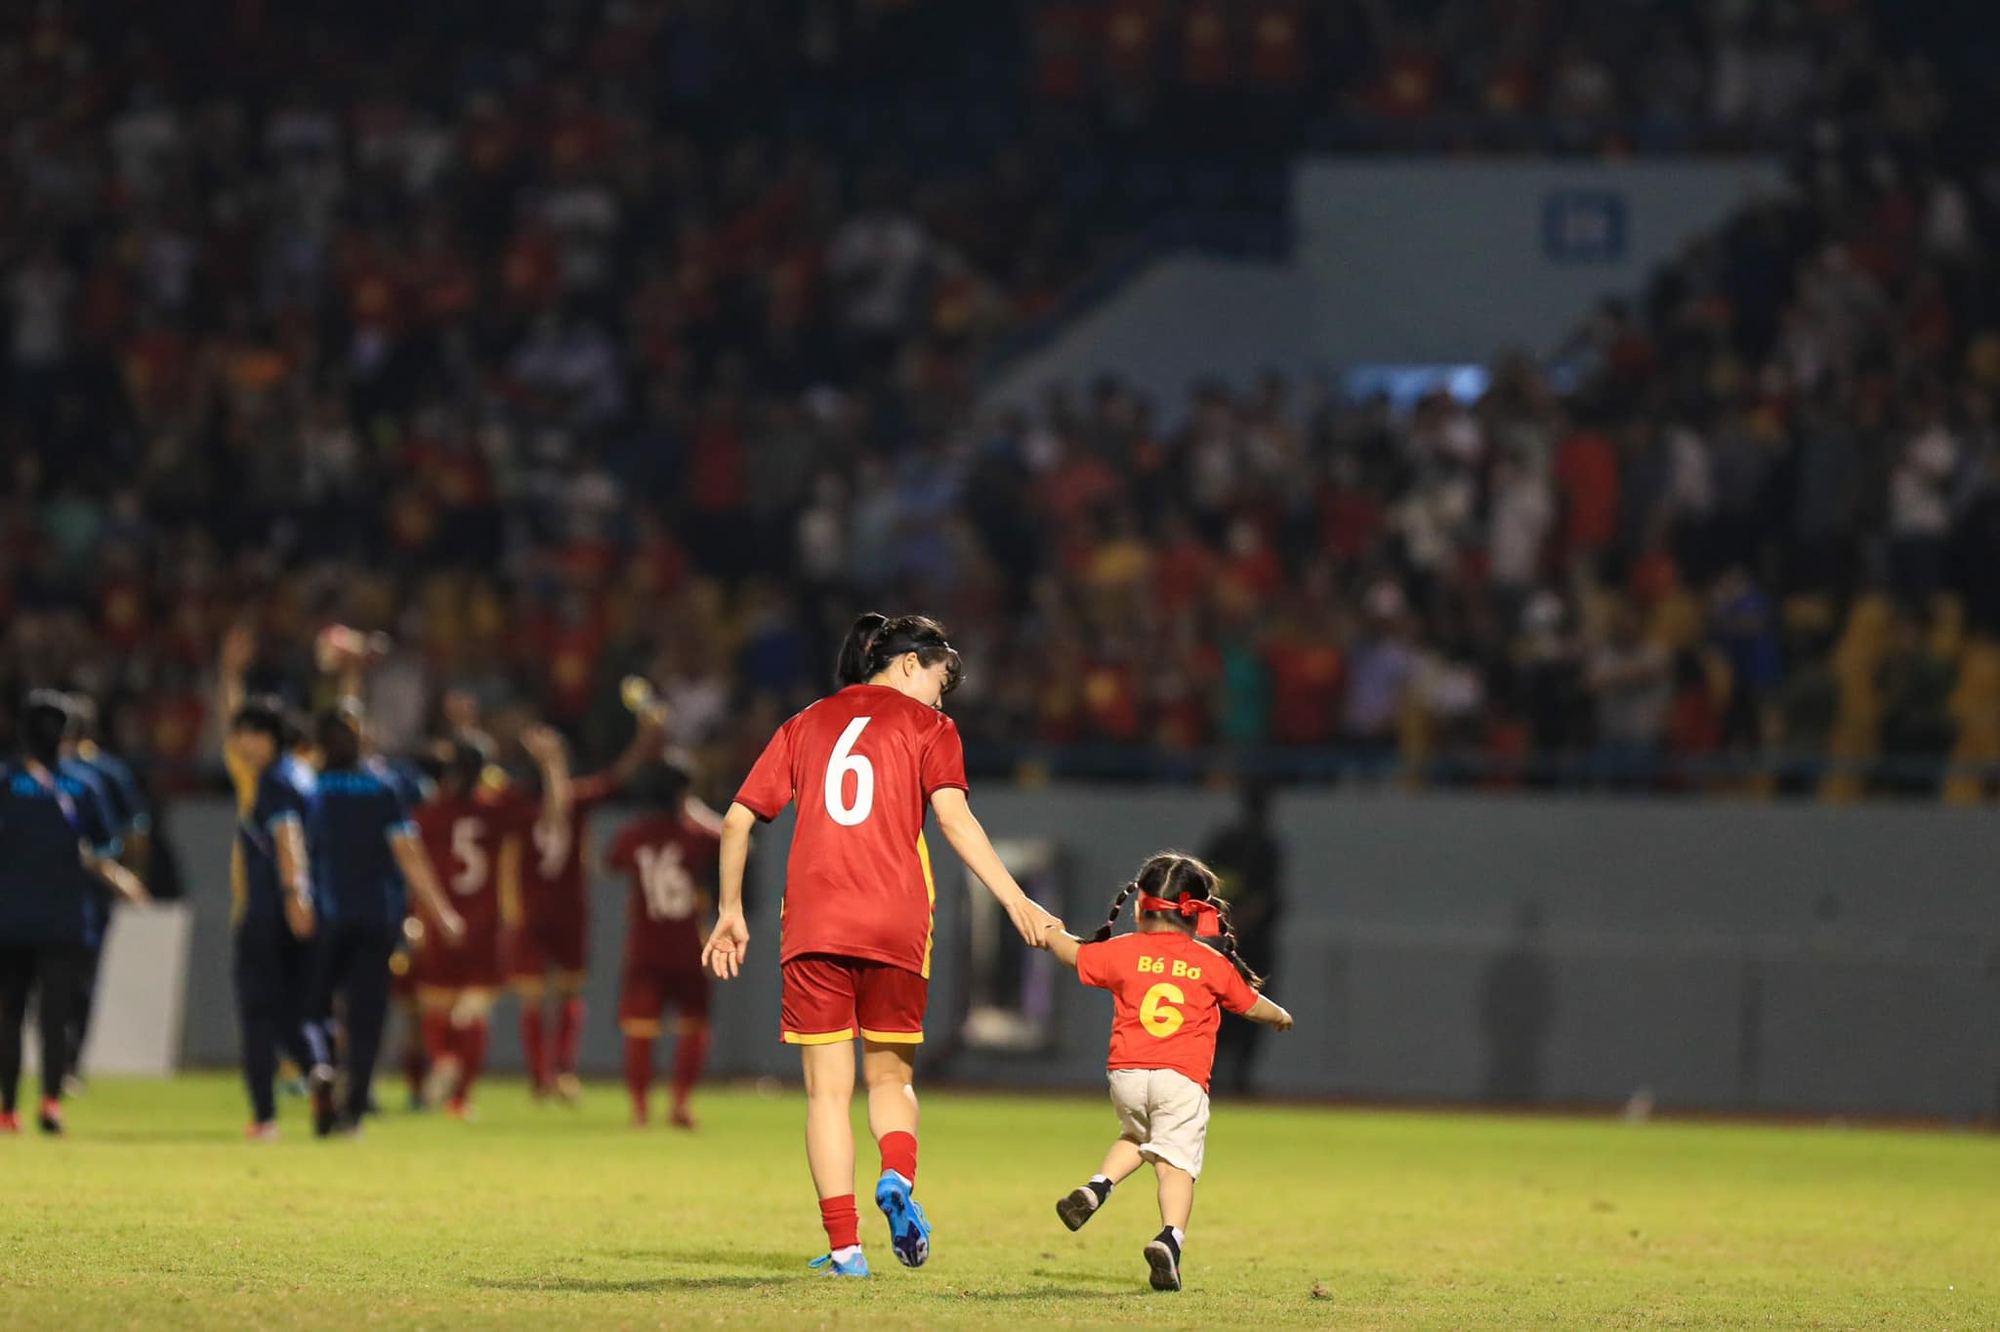 Có mẹ là tuyển thủ bóng đá nữ là cảm giác thế nào: Khoảnh khắc Hoàng Quỳnh ôm con chạy trên sân cỏ khiến ai cũng xúc động - Ảnh 3.